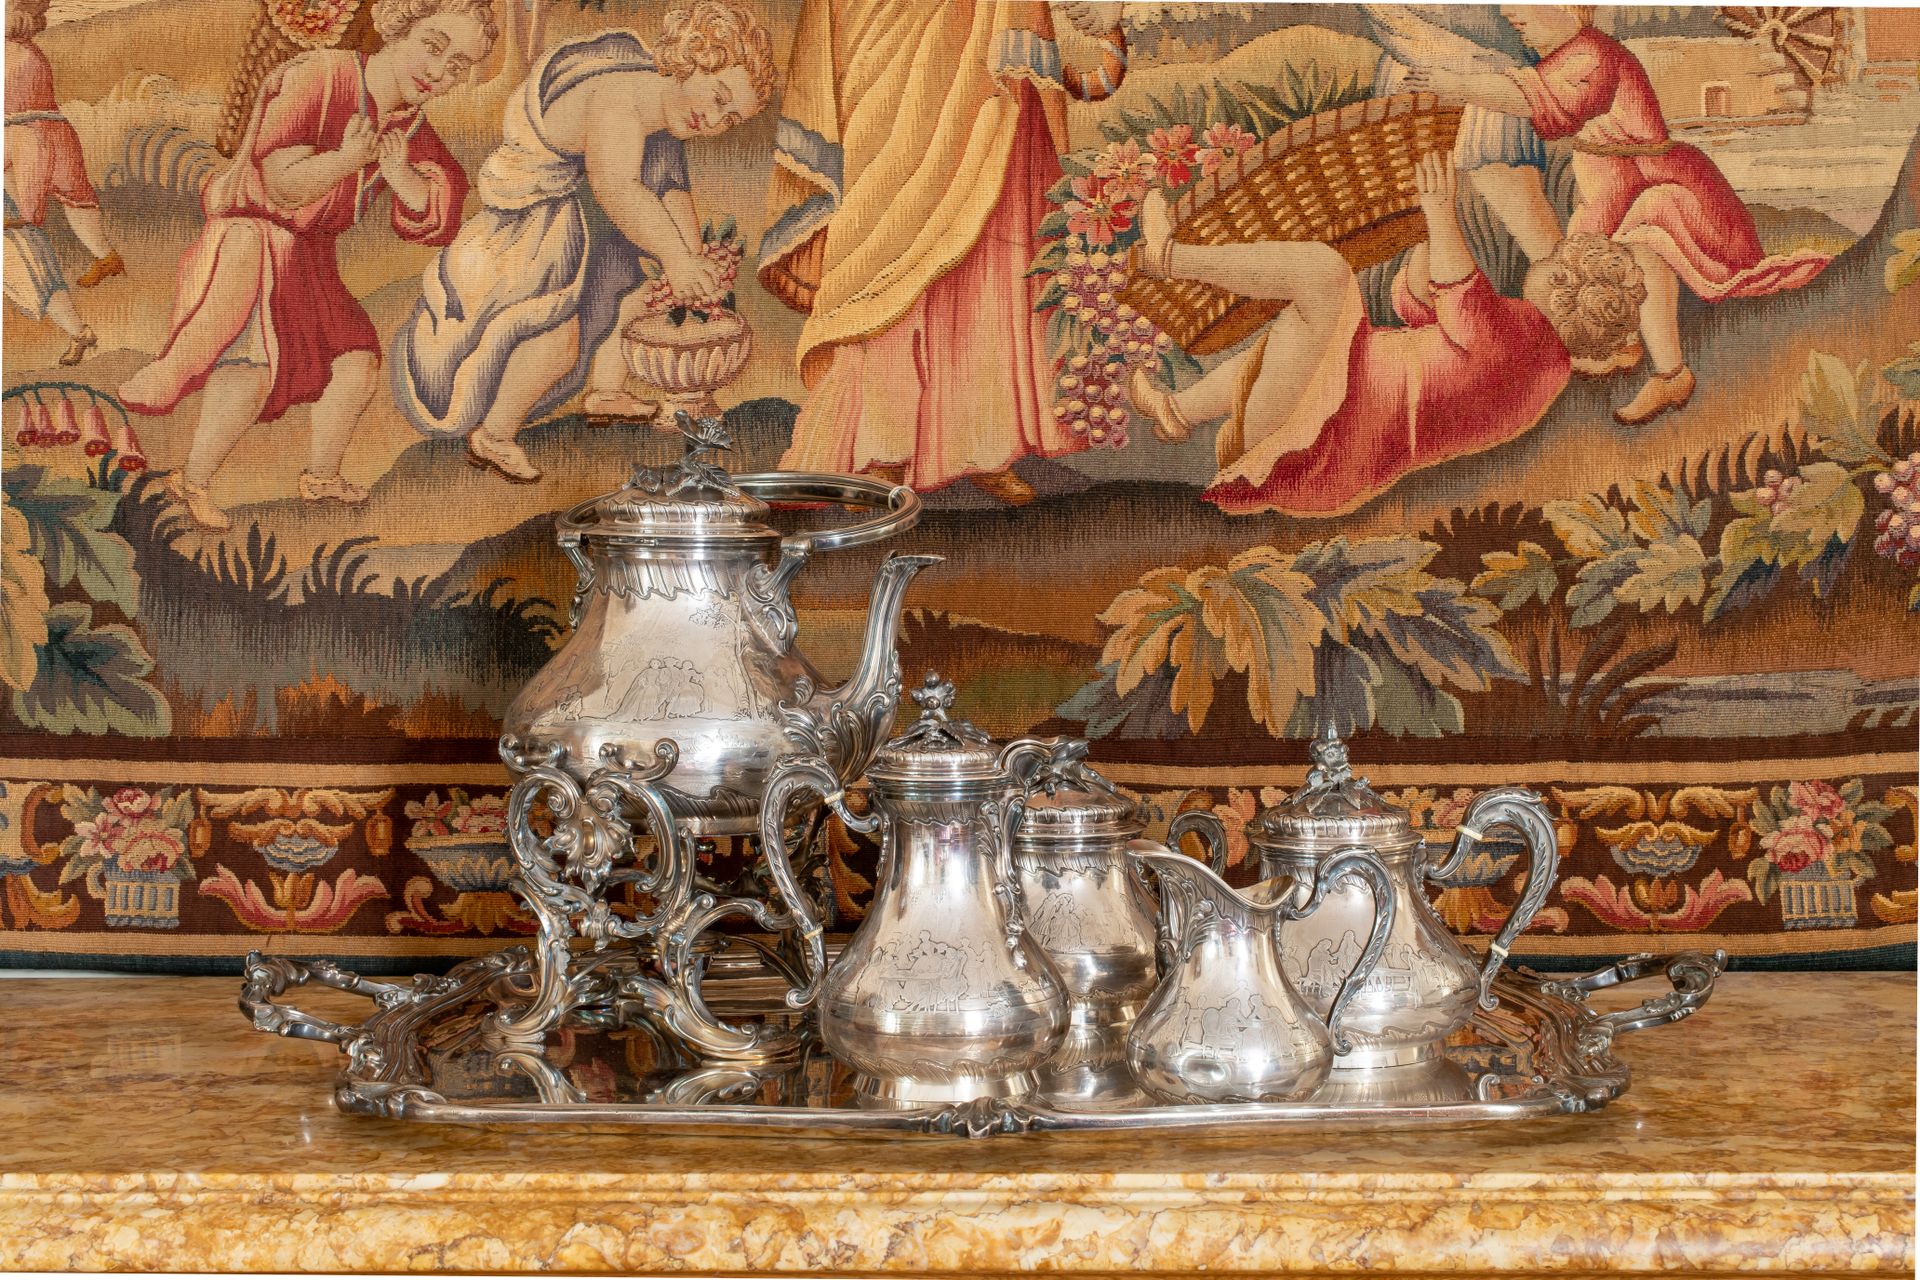 Null 弗雷德里克-布谢龙 (1830-1902)

一个大型的银制茶和咖啡服务，包括一个炉架上的茶壶（日期为1882年），两个浇注器，一个糖碗，一个奶精，和&hellip;